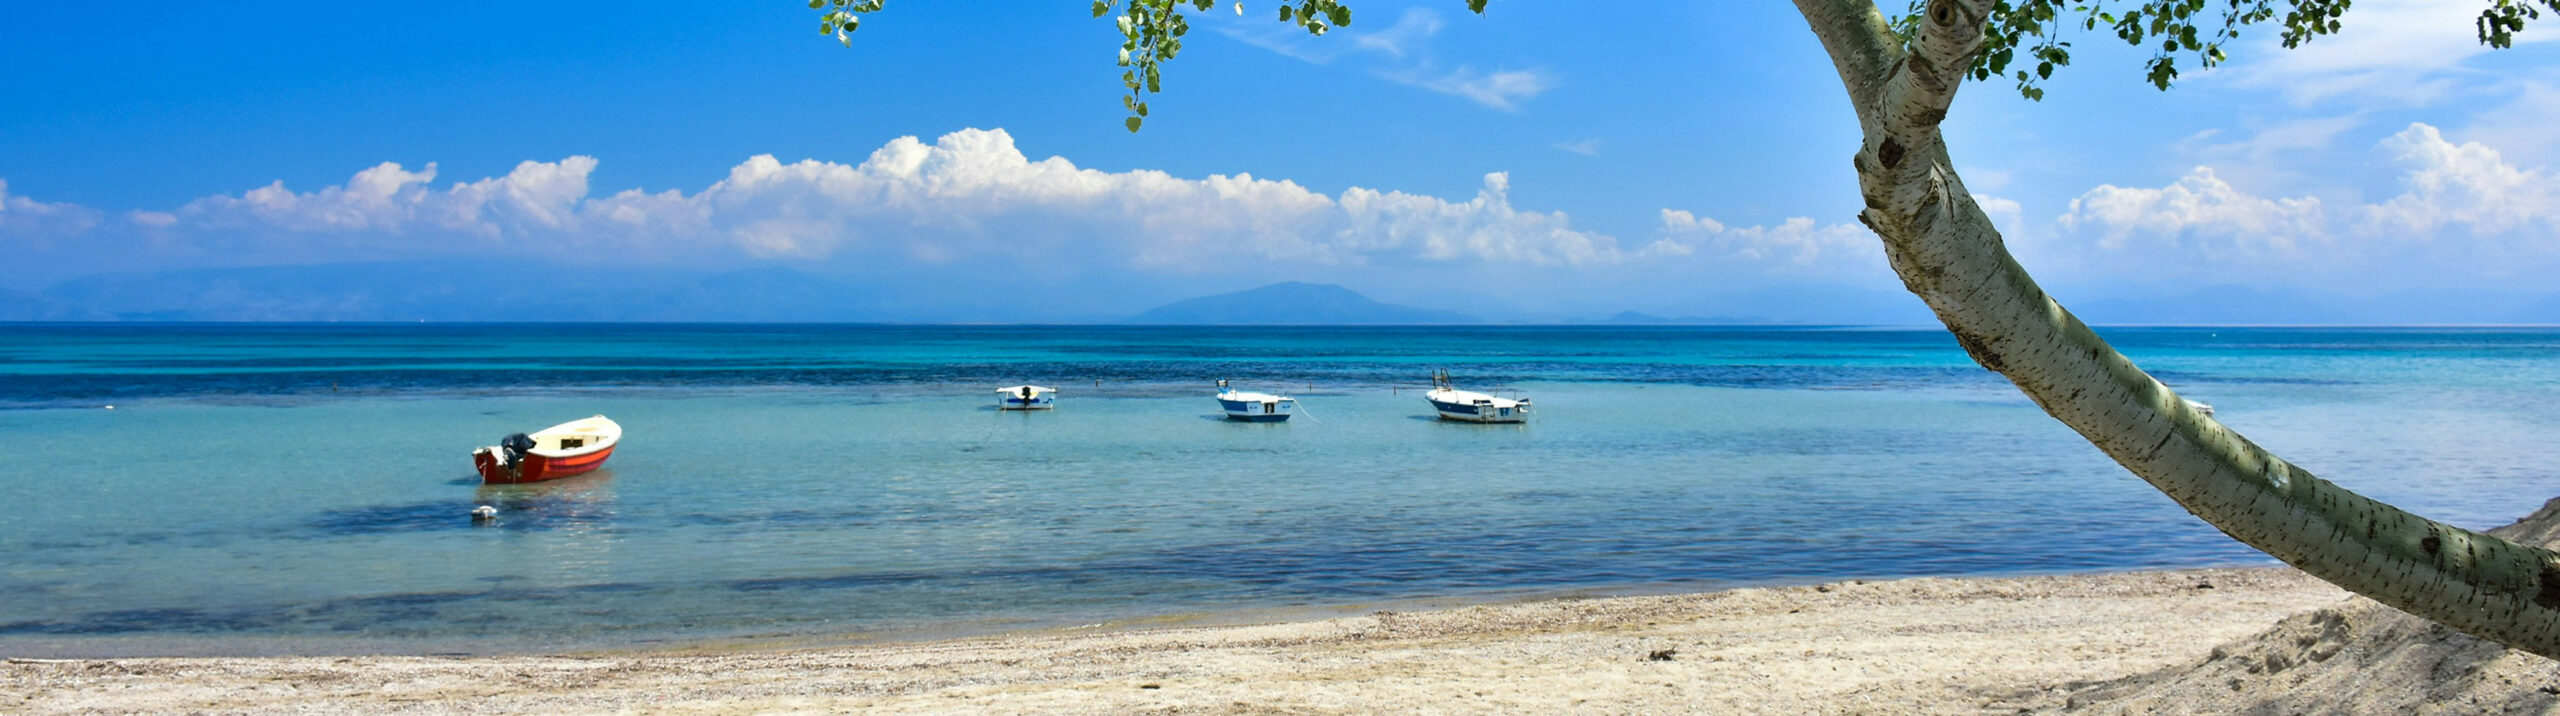 Das Bild zeigt einen Strand auf Korfu. Im Vordergrund sind Sand, Wasser und vier Boote zu sehen. Im Hintergrund sind Wolken am Himmel. In der weiten Ferne ist ein Berg zu sehen.